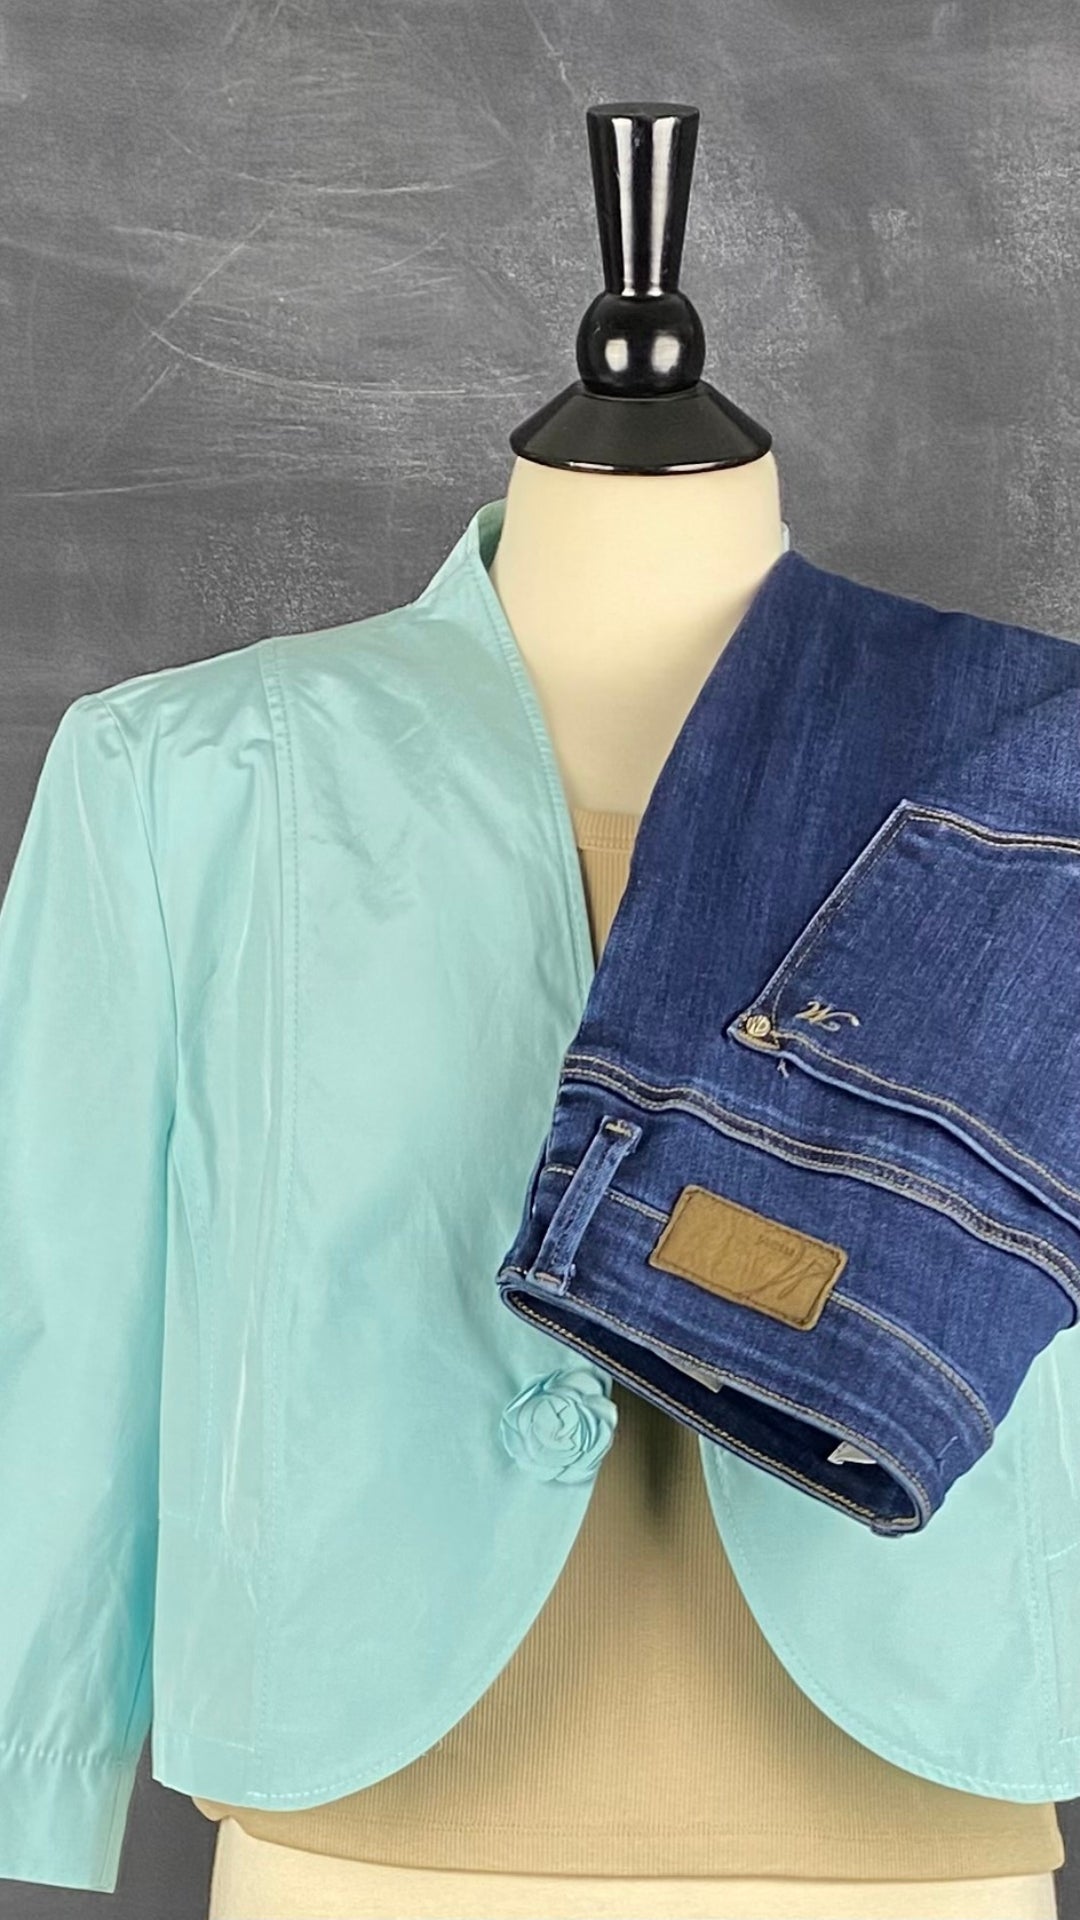 Veste légère aqua avec bouton en forme de fleur Gerry Weber, taille estimée medium. Vue de l'agencement avec le jeans Mavi et la camisole Sève & Co.